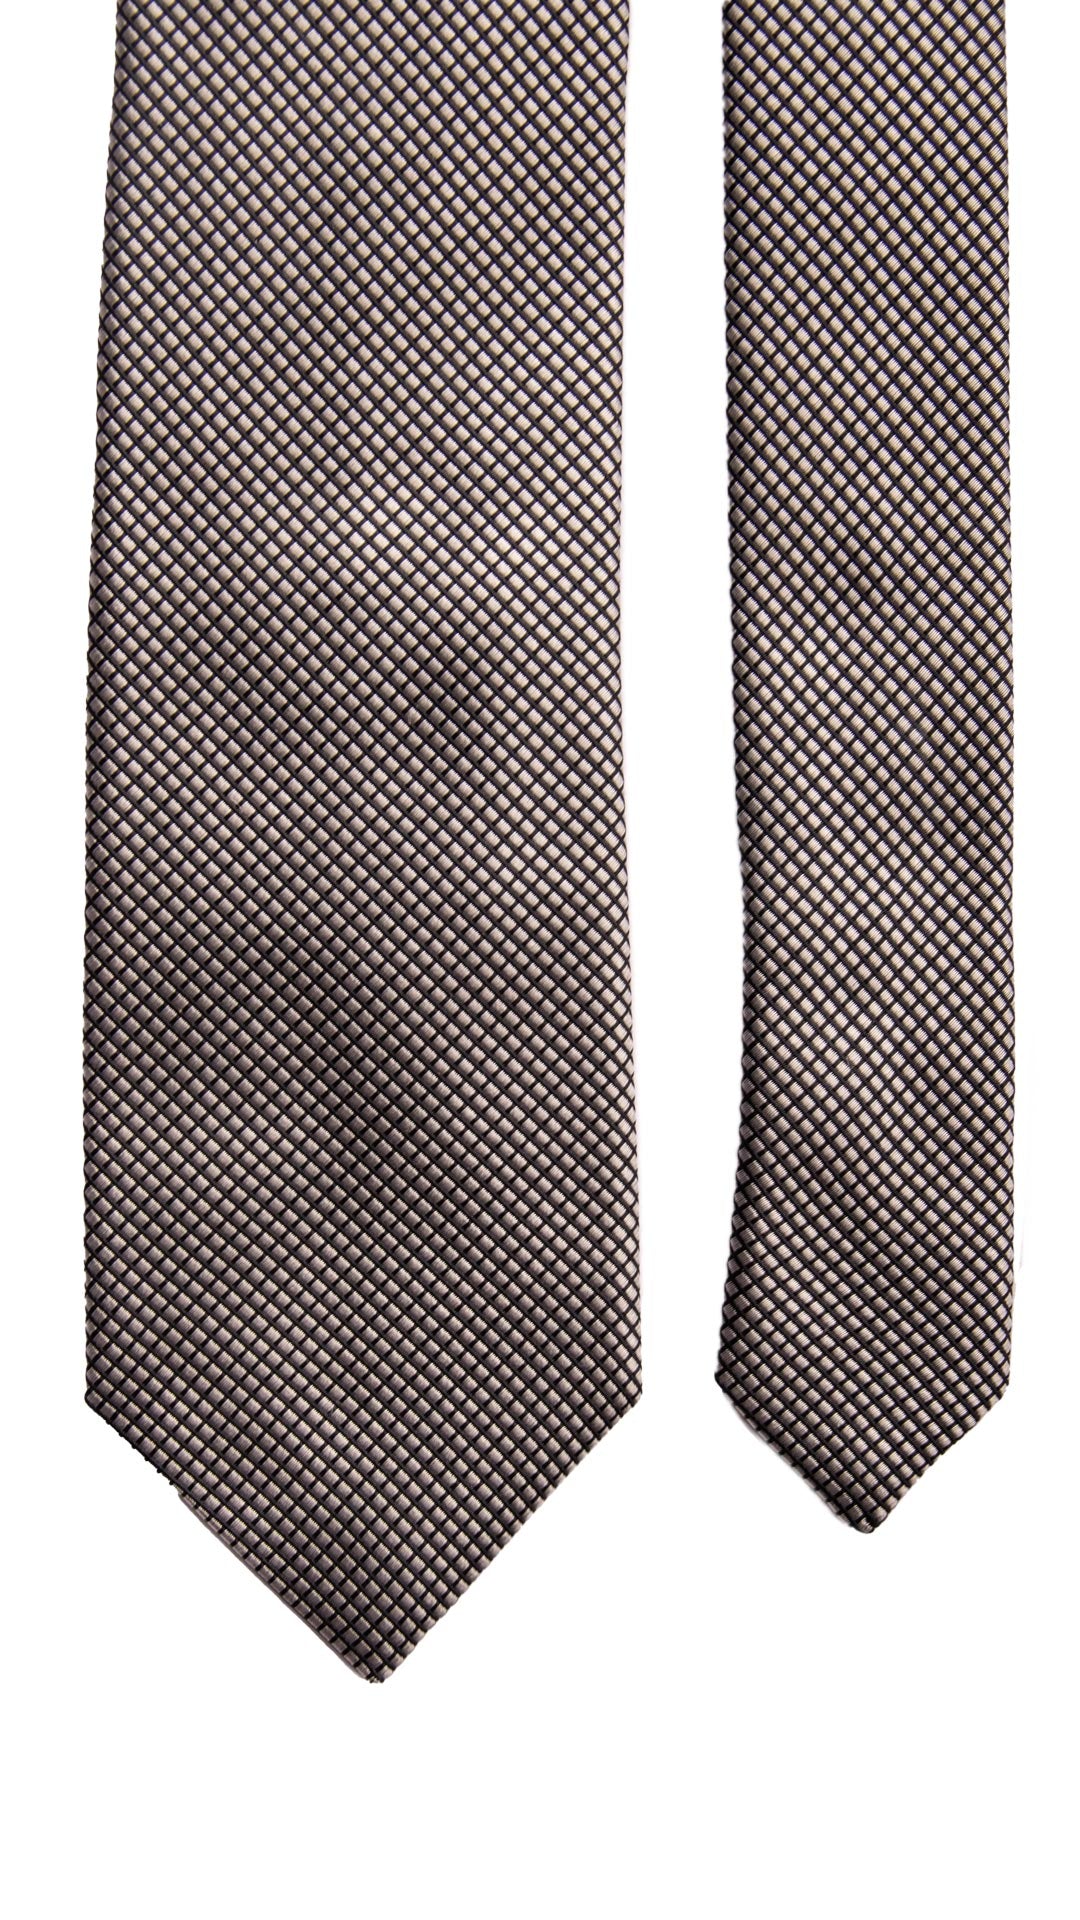 Cravatta da Cerimonia di Seta Nera Grigia Argento Made in Italy Graffeo Cravatte Pala